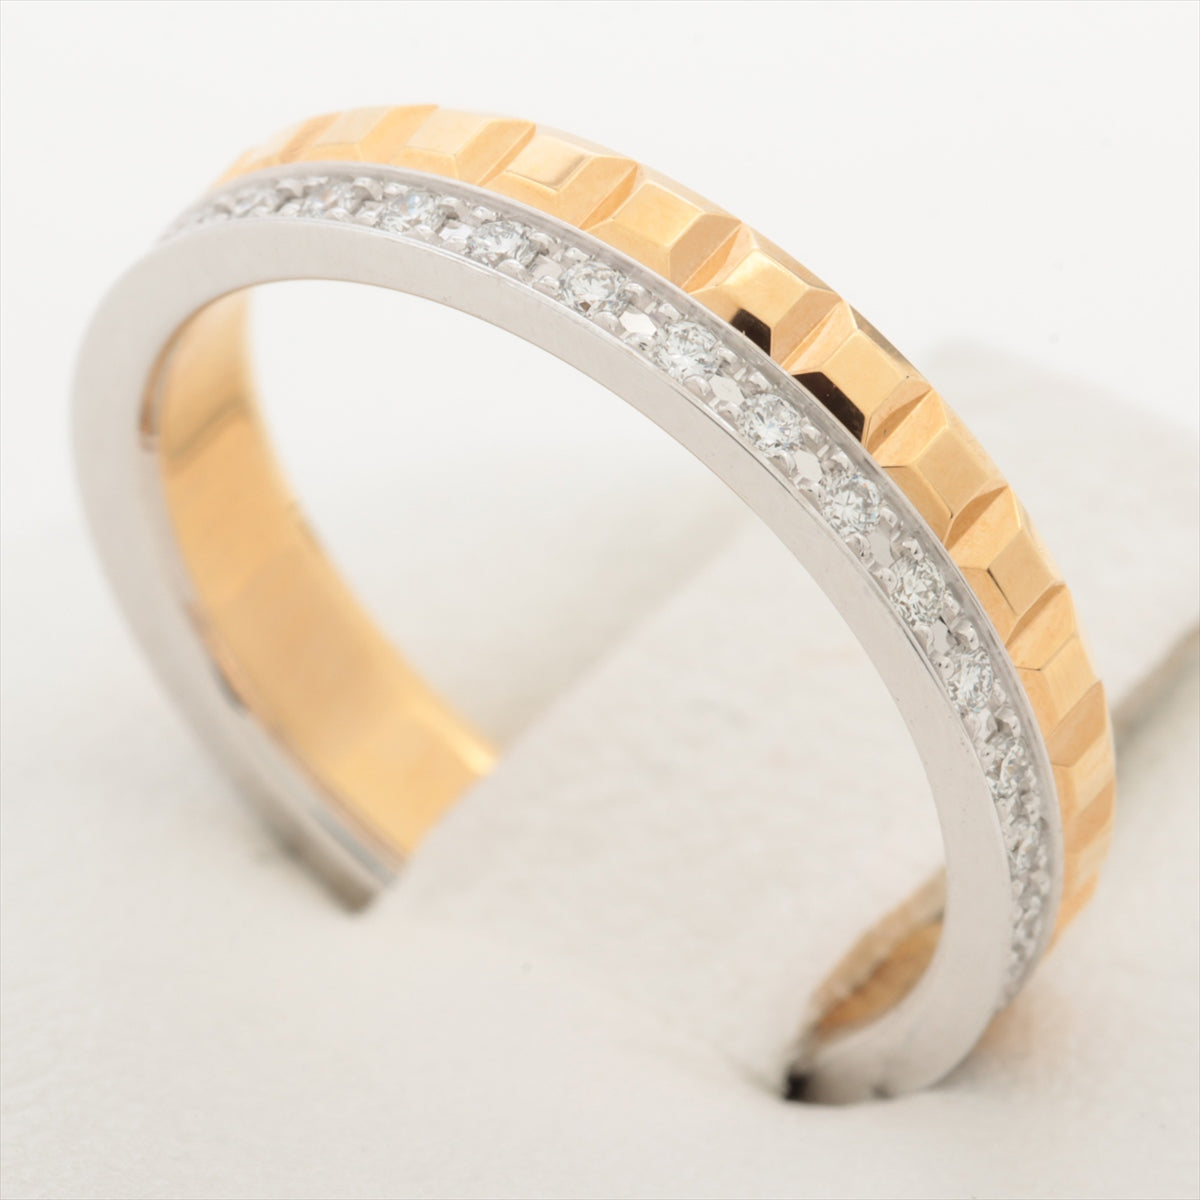 Boucheron Quatre Radiant Clou de Paris diamond rings 750(YG×WG) 3.6g 50